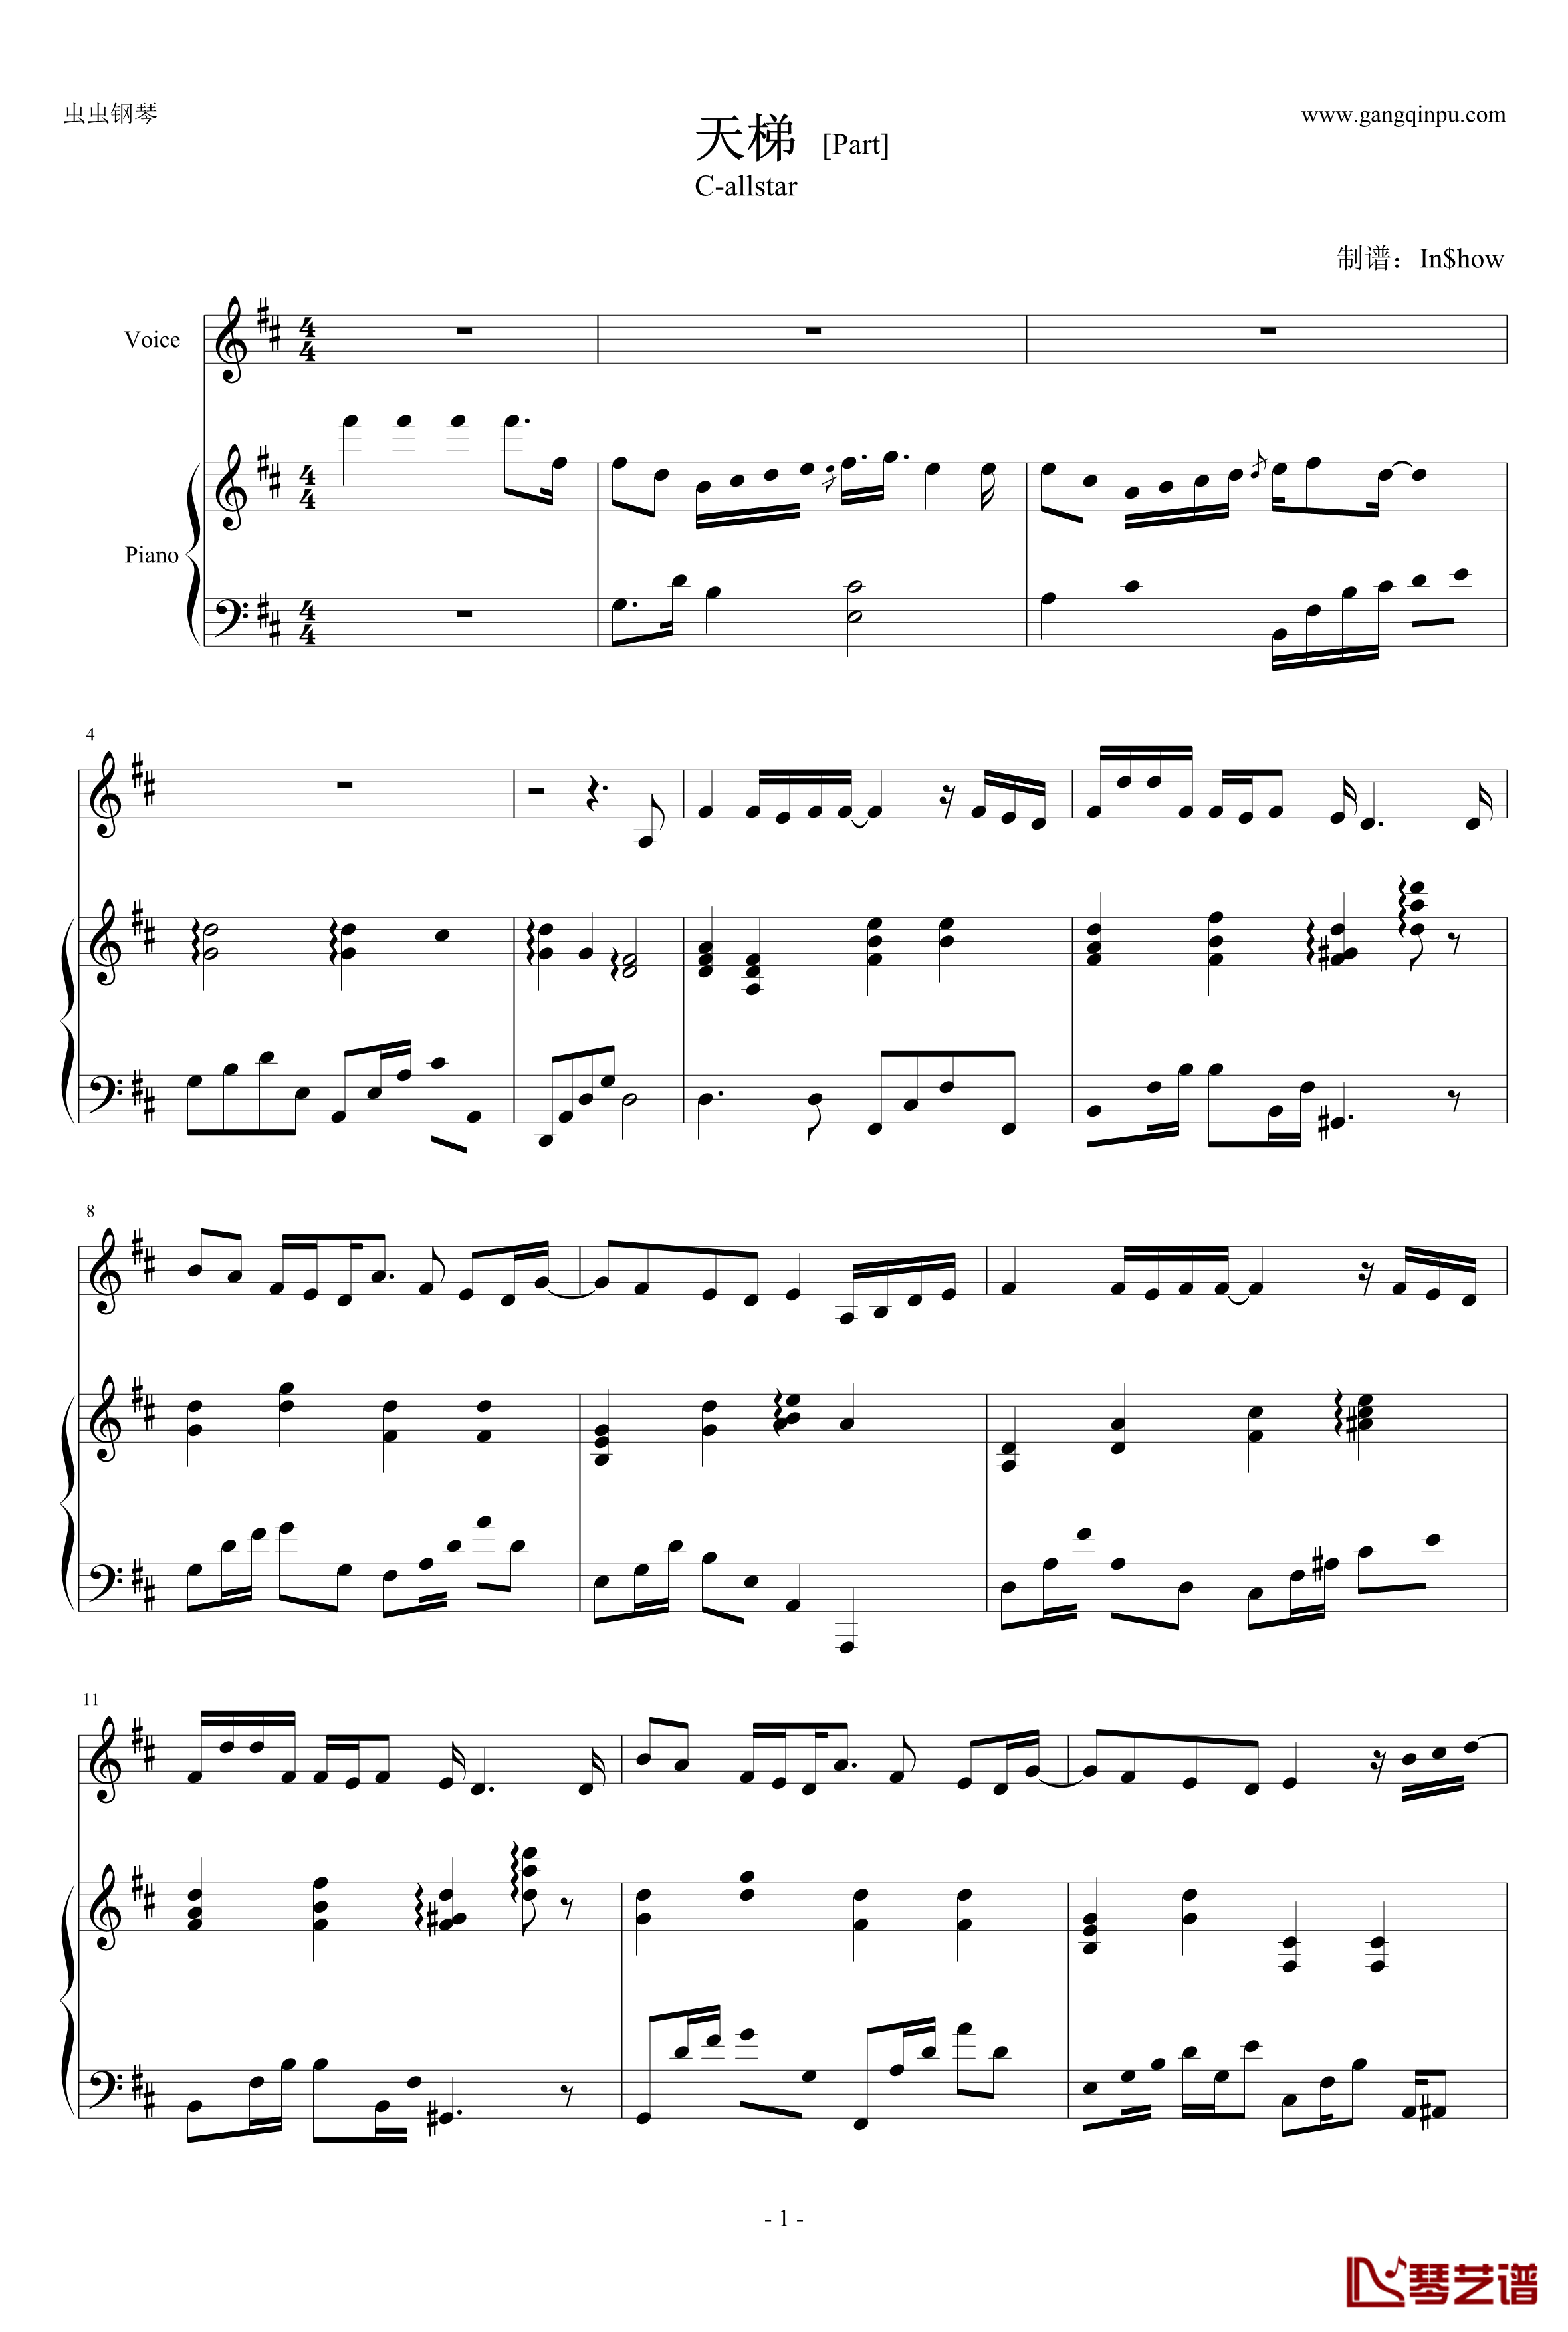 天梯钢琴谱-弹唱版-C-allstar1